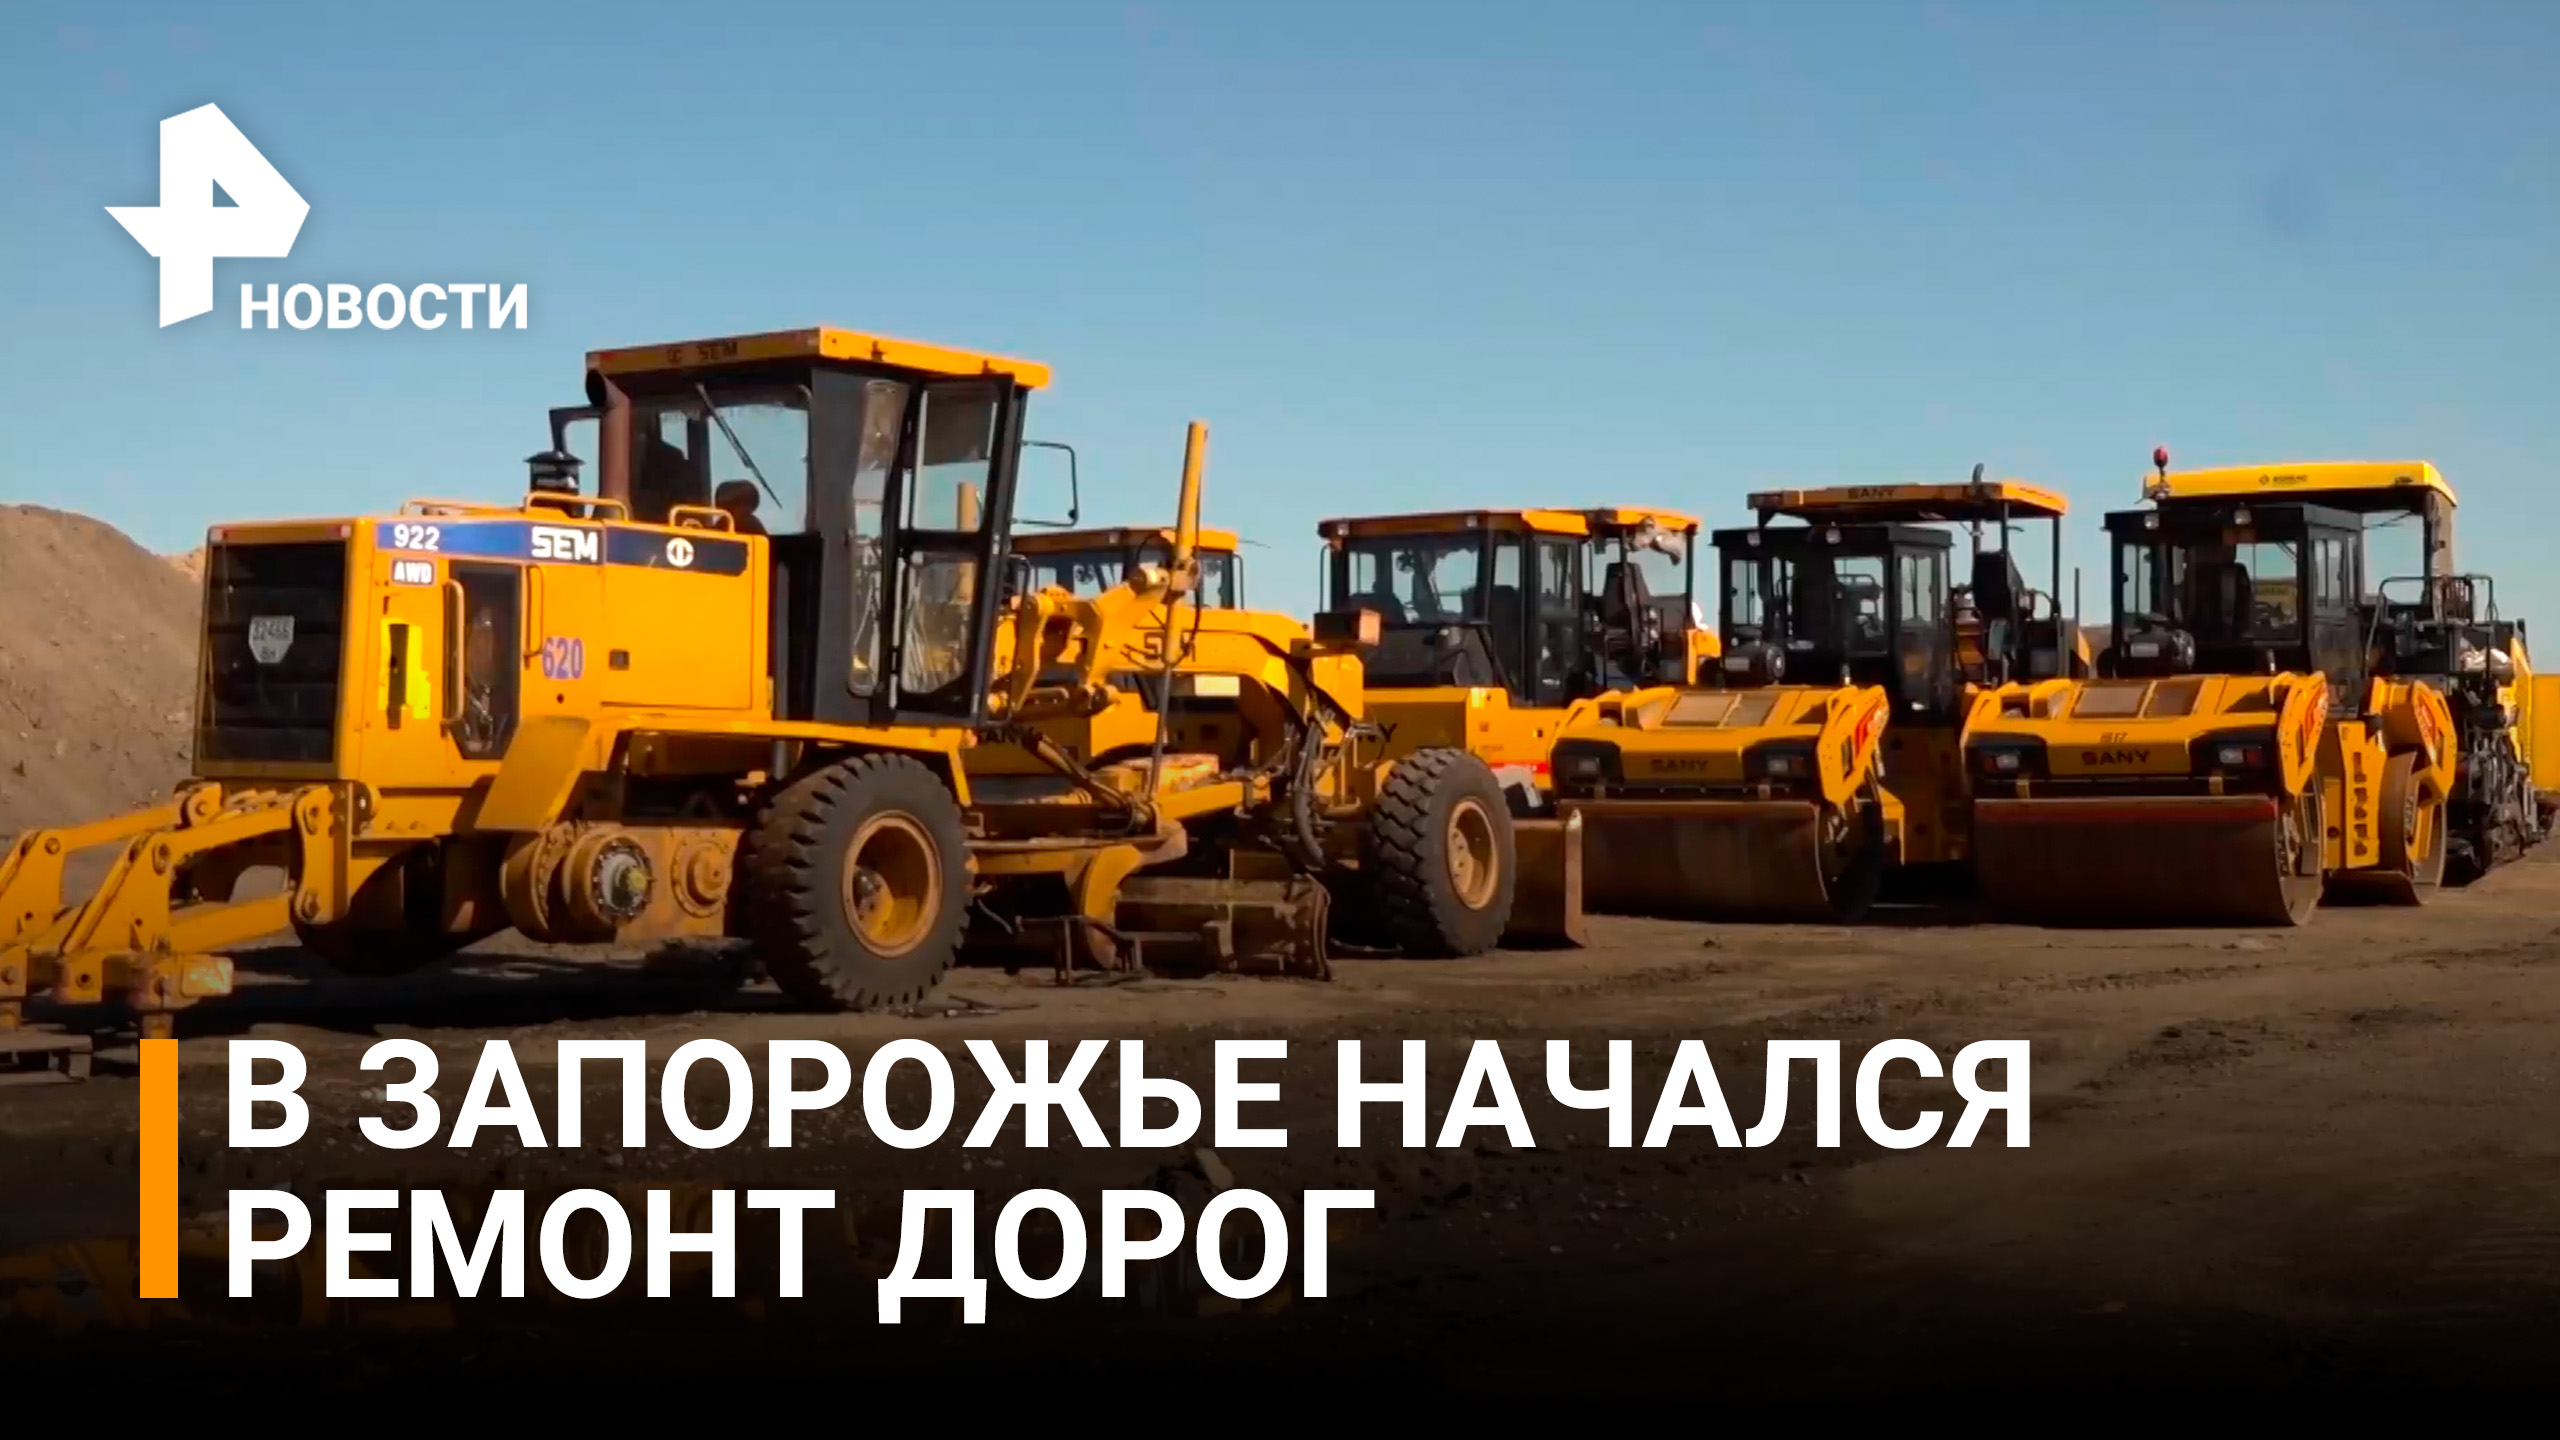 Как проходит восстановление магистрали между Мелитополем и Бердянском / РЕН Новости